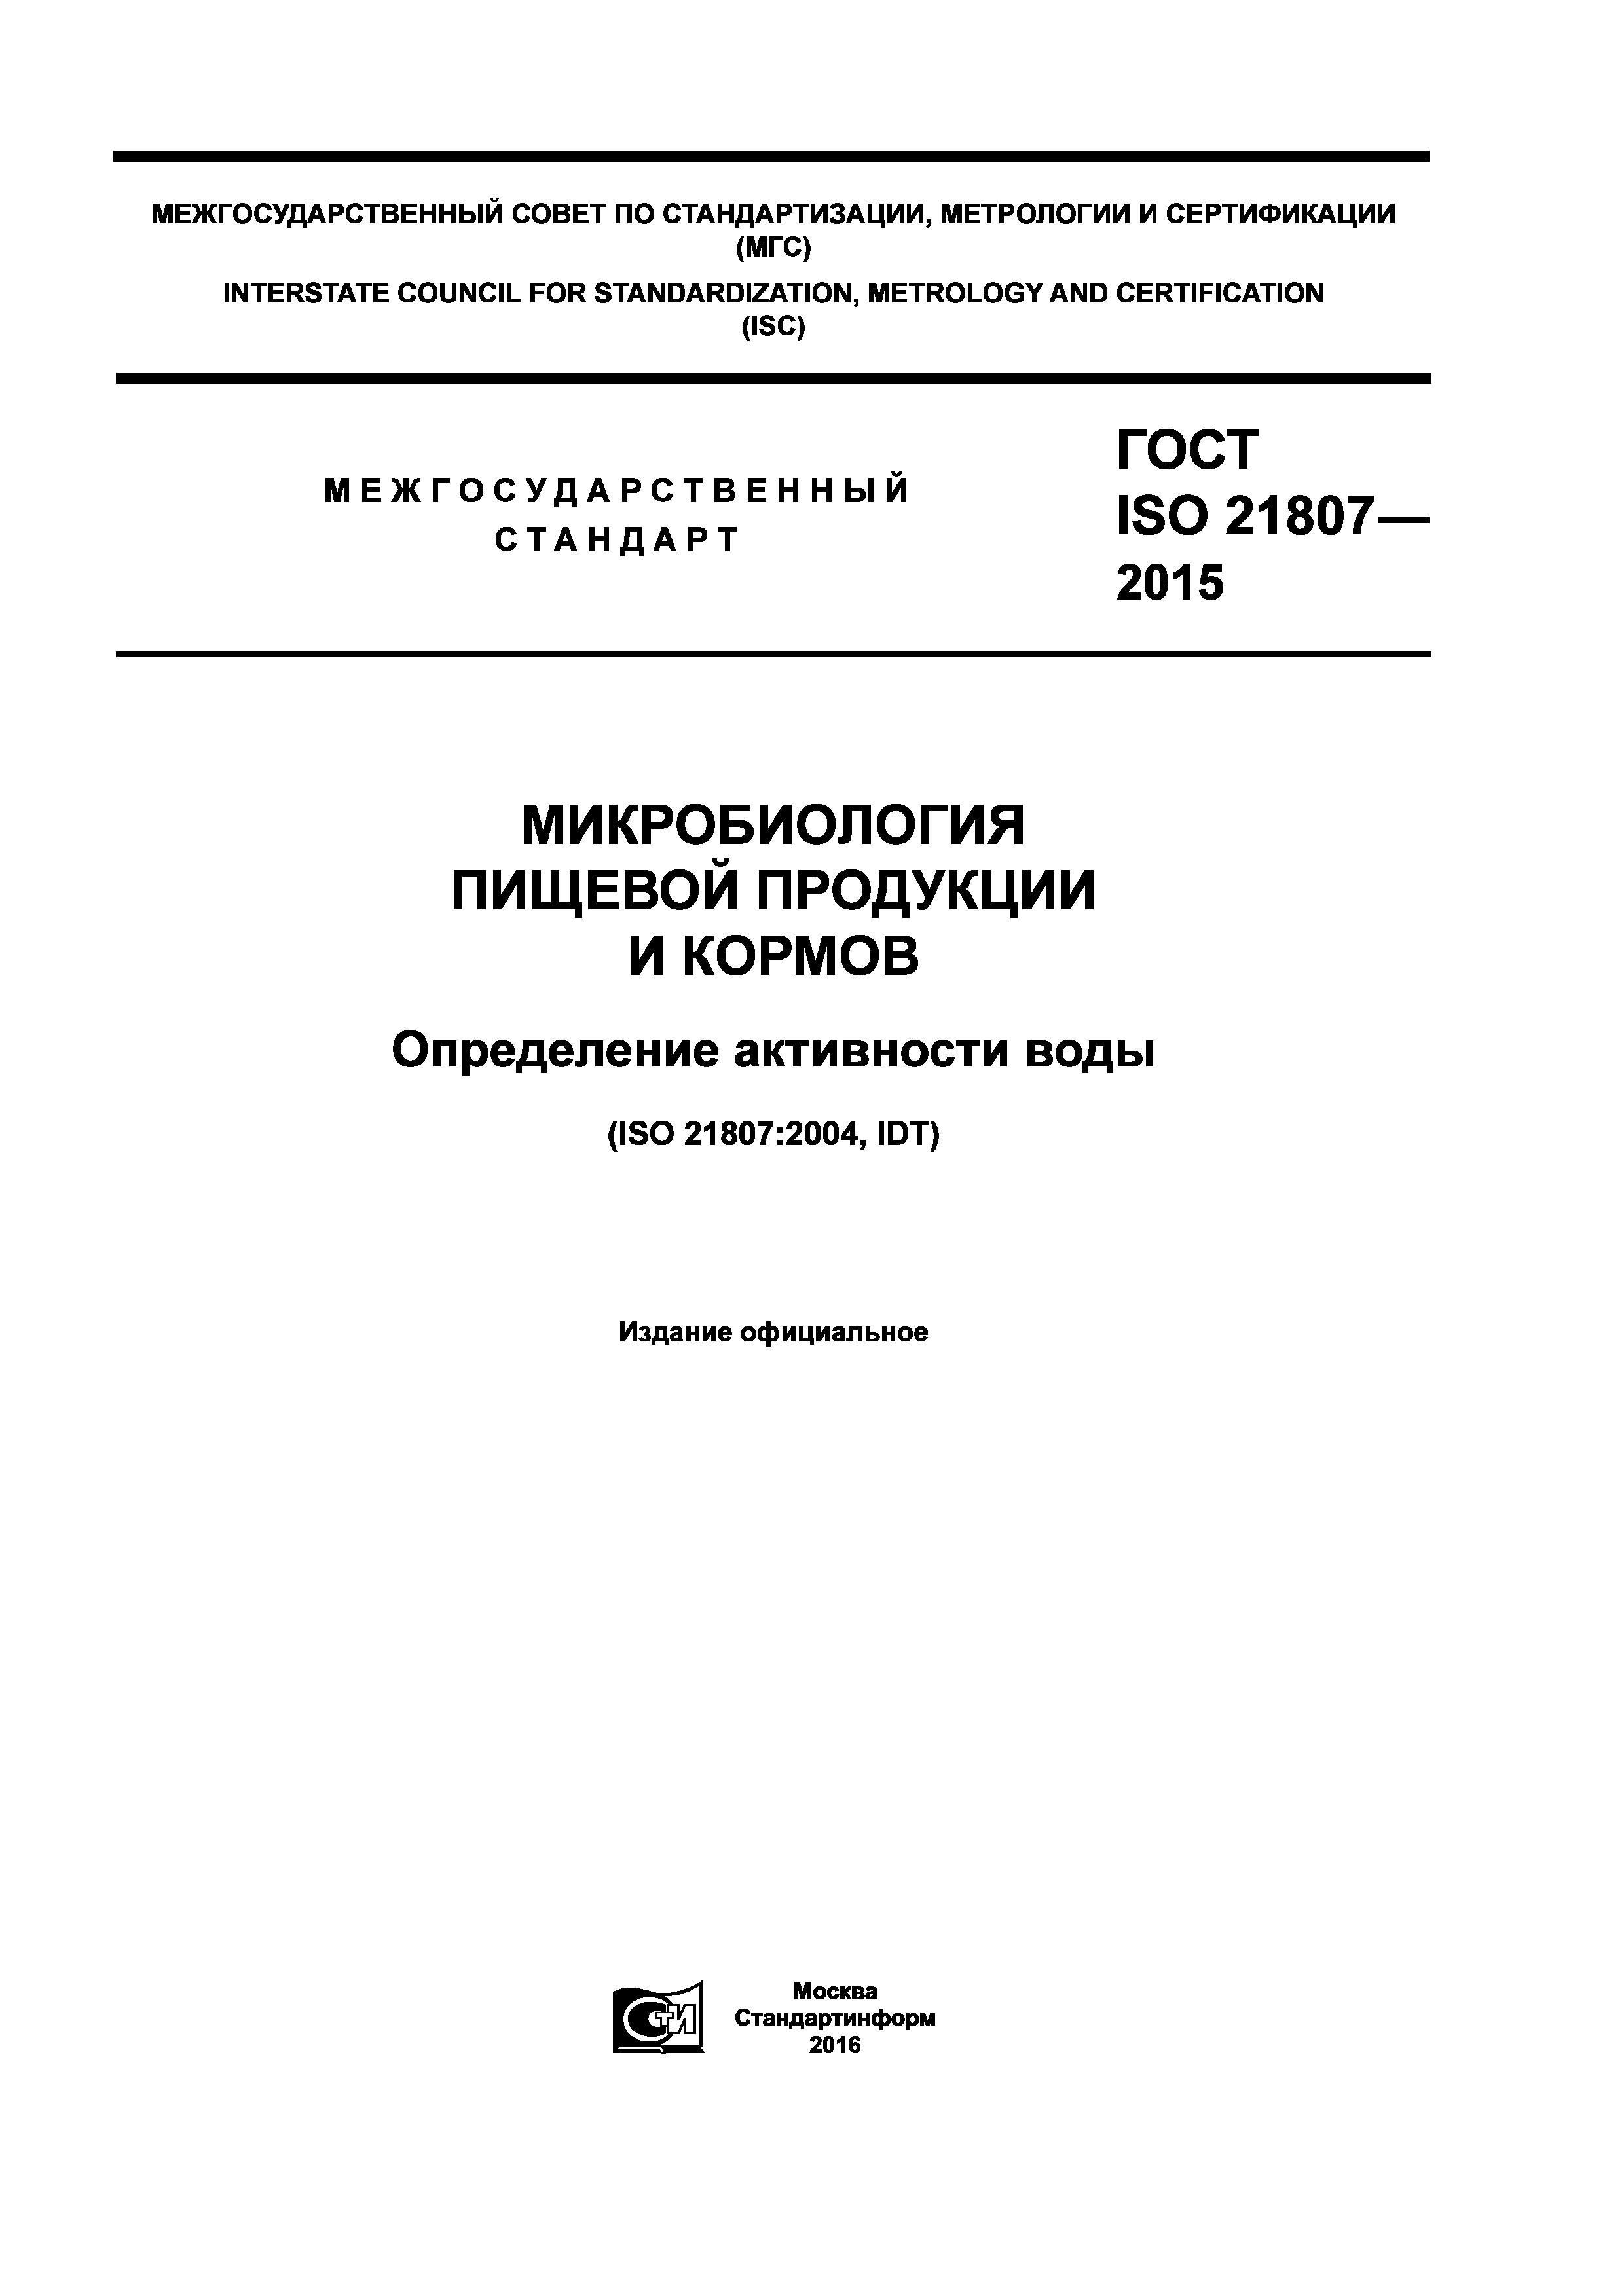 ГОСТ ISO 21807-2015